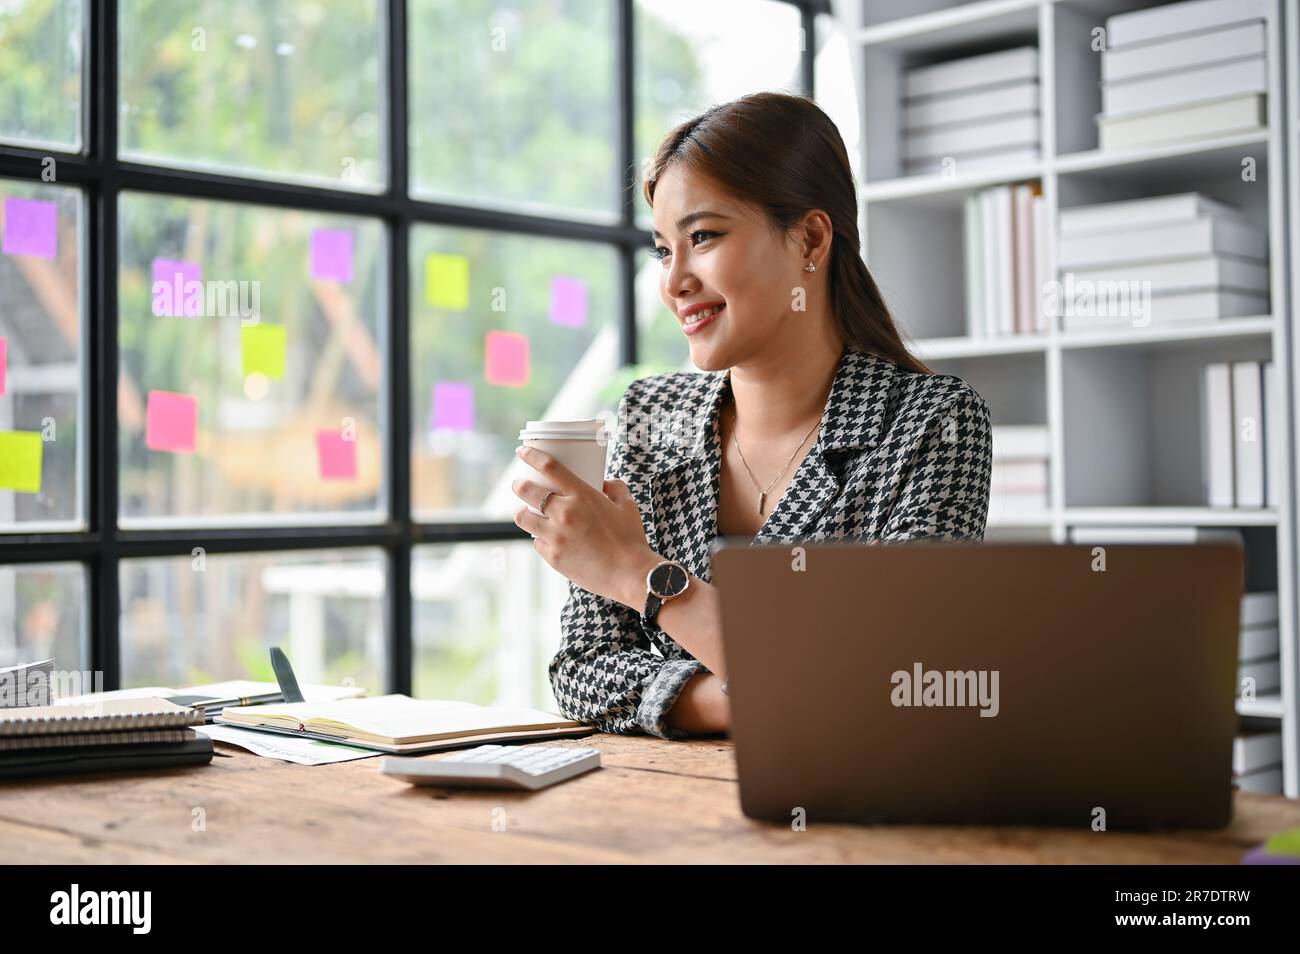 Eine attraktive asiatische Geschäftsfrau der Millennials sitzt in einem trendigen Anzug an ihrem Schreibtisch und träumt, während sie ihren Morgenkaffee trinkt. Stockfoto